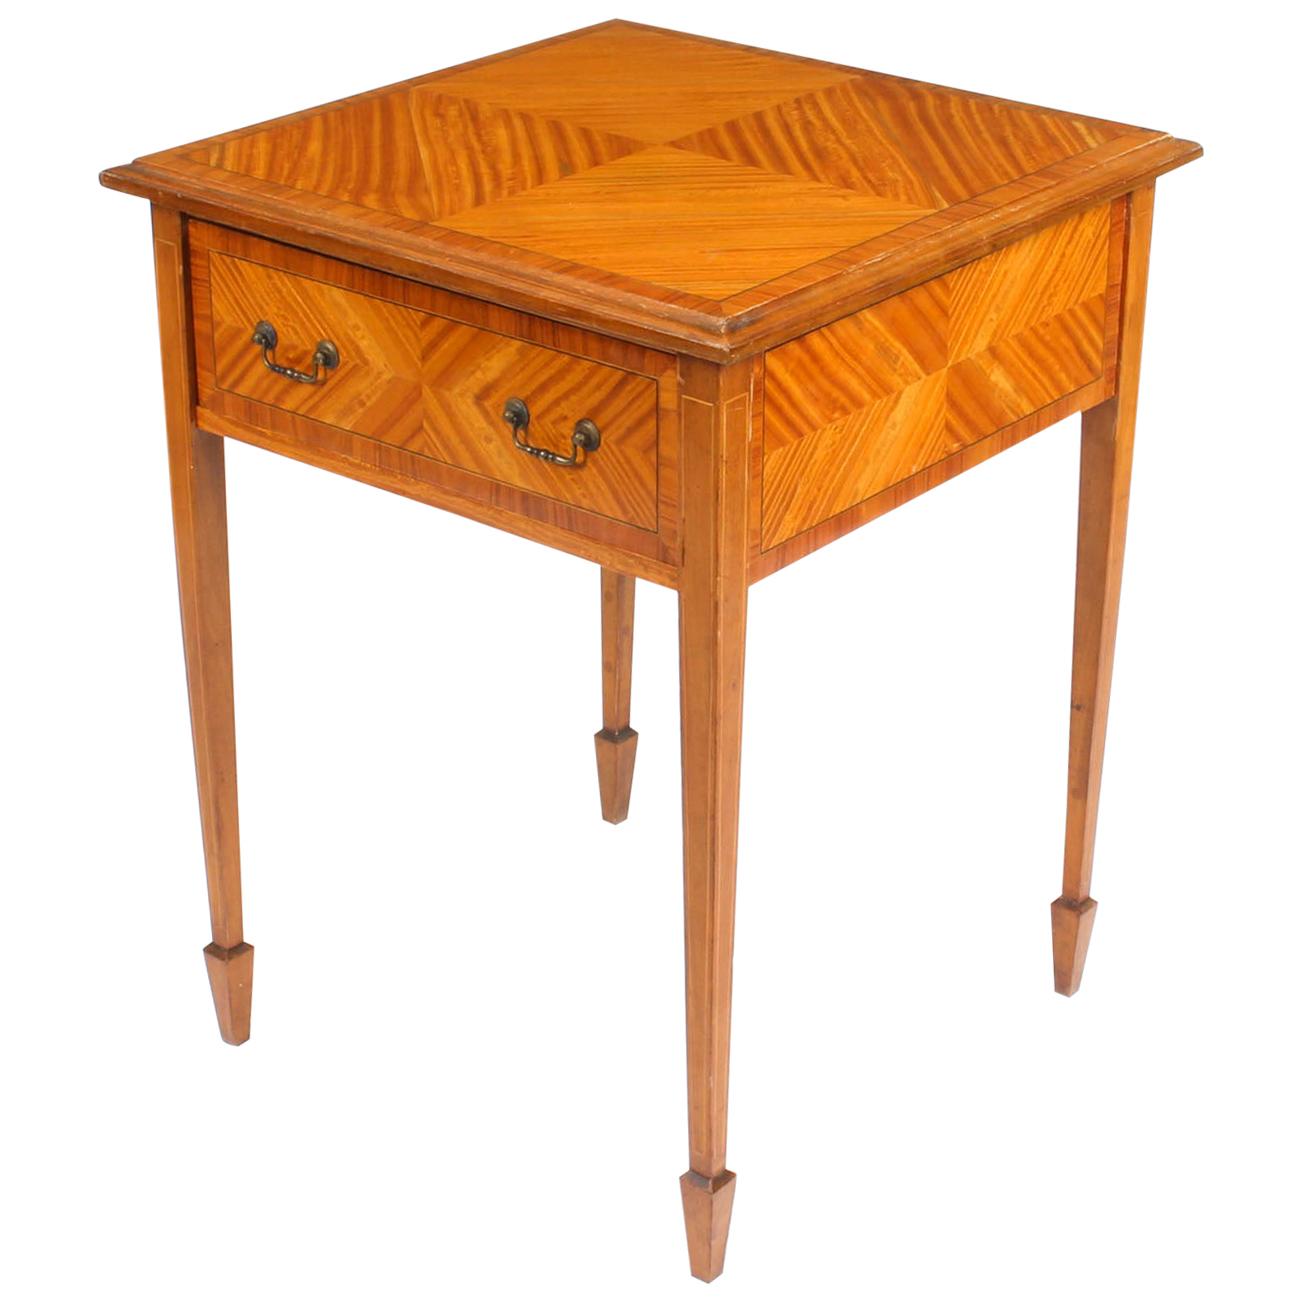 Magnifique table d'appoint victorienne en bois satiné avec un tiroir de taille inhabituelle, vers 1880.

Cette pièce d'une grande finesse est fabriquée en bois de satin avec des bandes transversales en bois de roi et des incrustations en